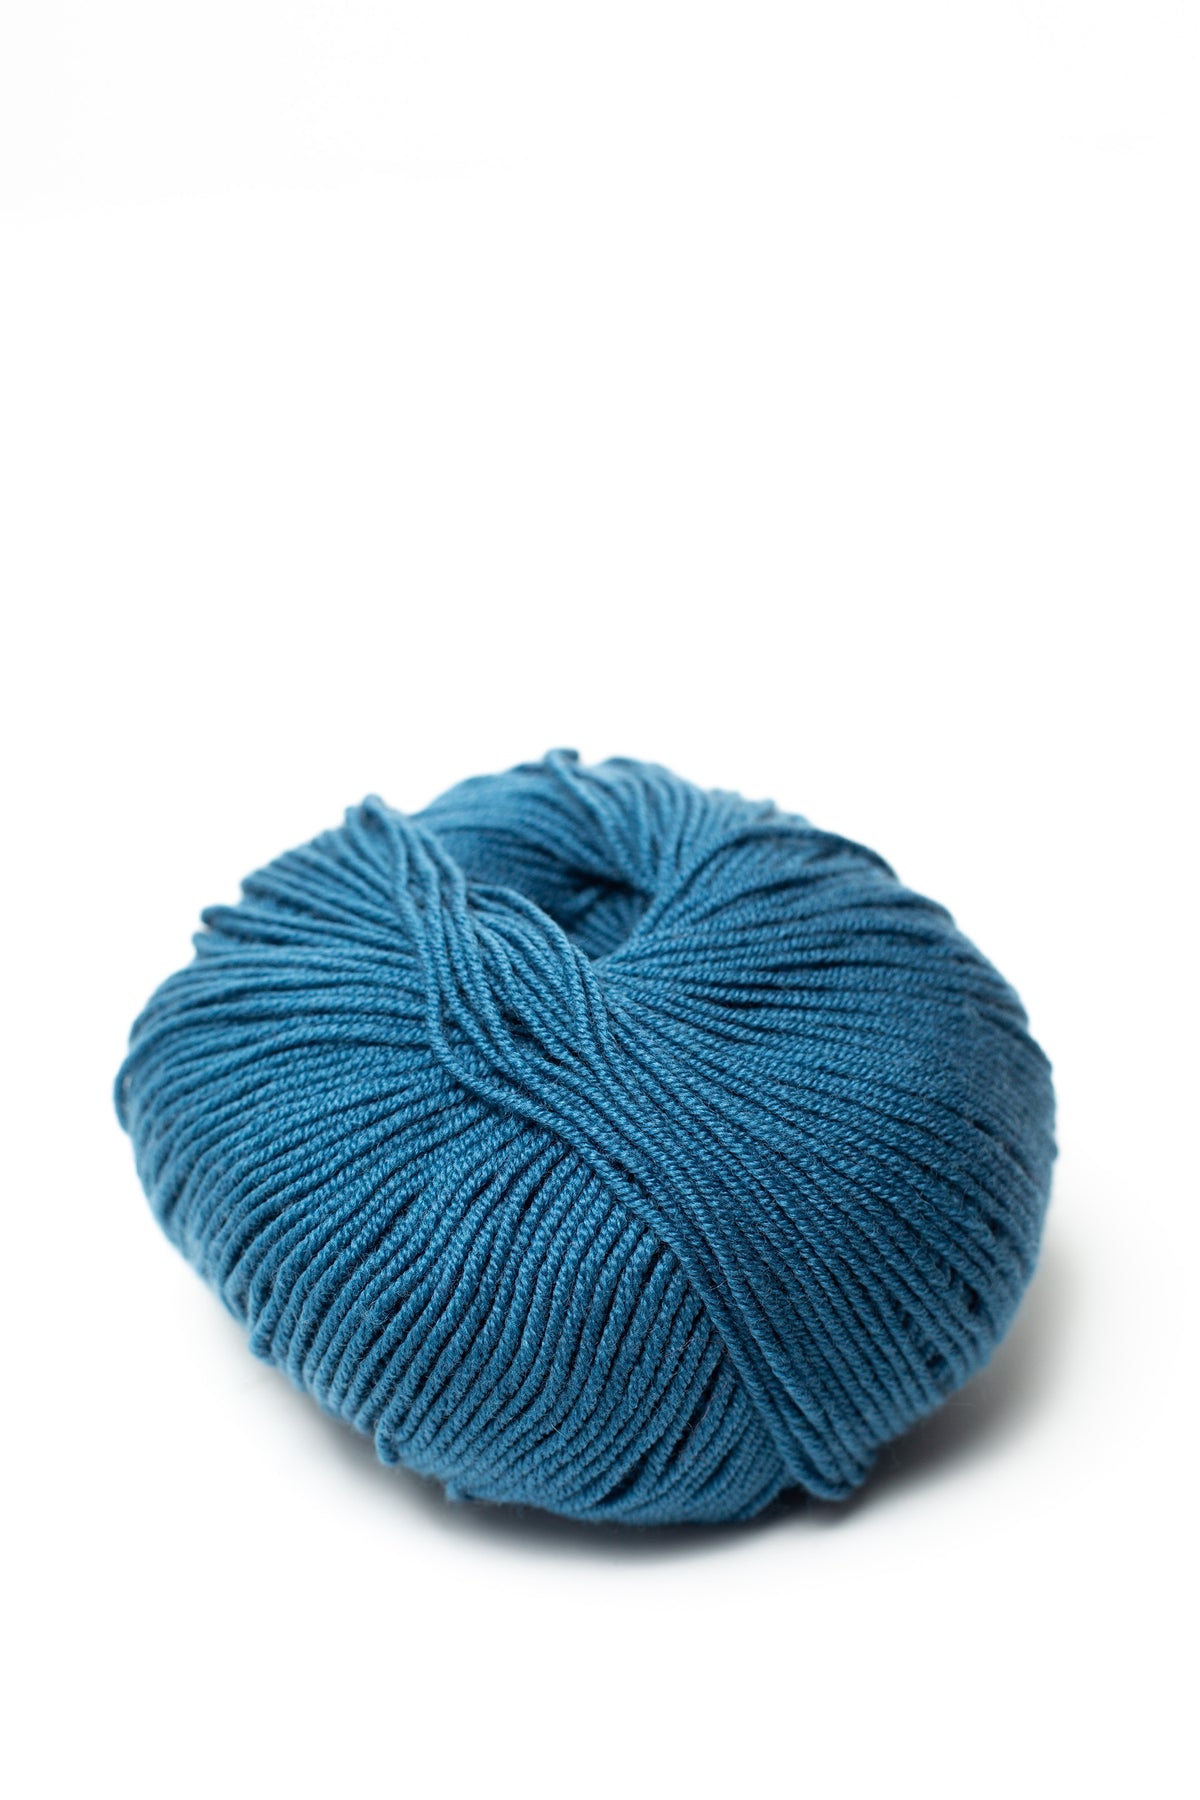 Superwash Merino Wool Yarn Drops Baby Merino, Sport Weight, 5 ply, 1.8 oz  191 Yards (39 Purple Orchid)